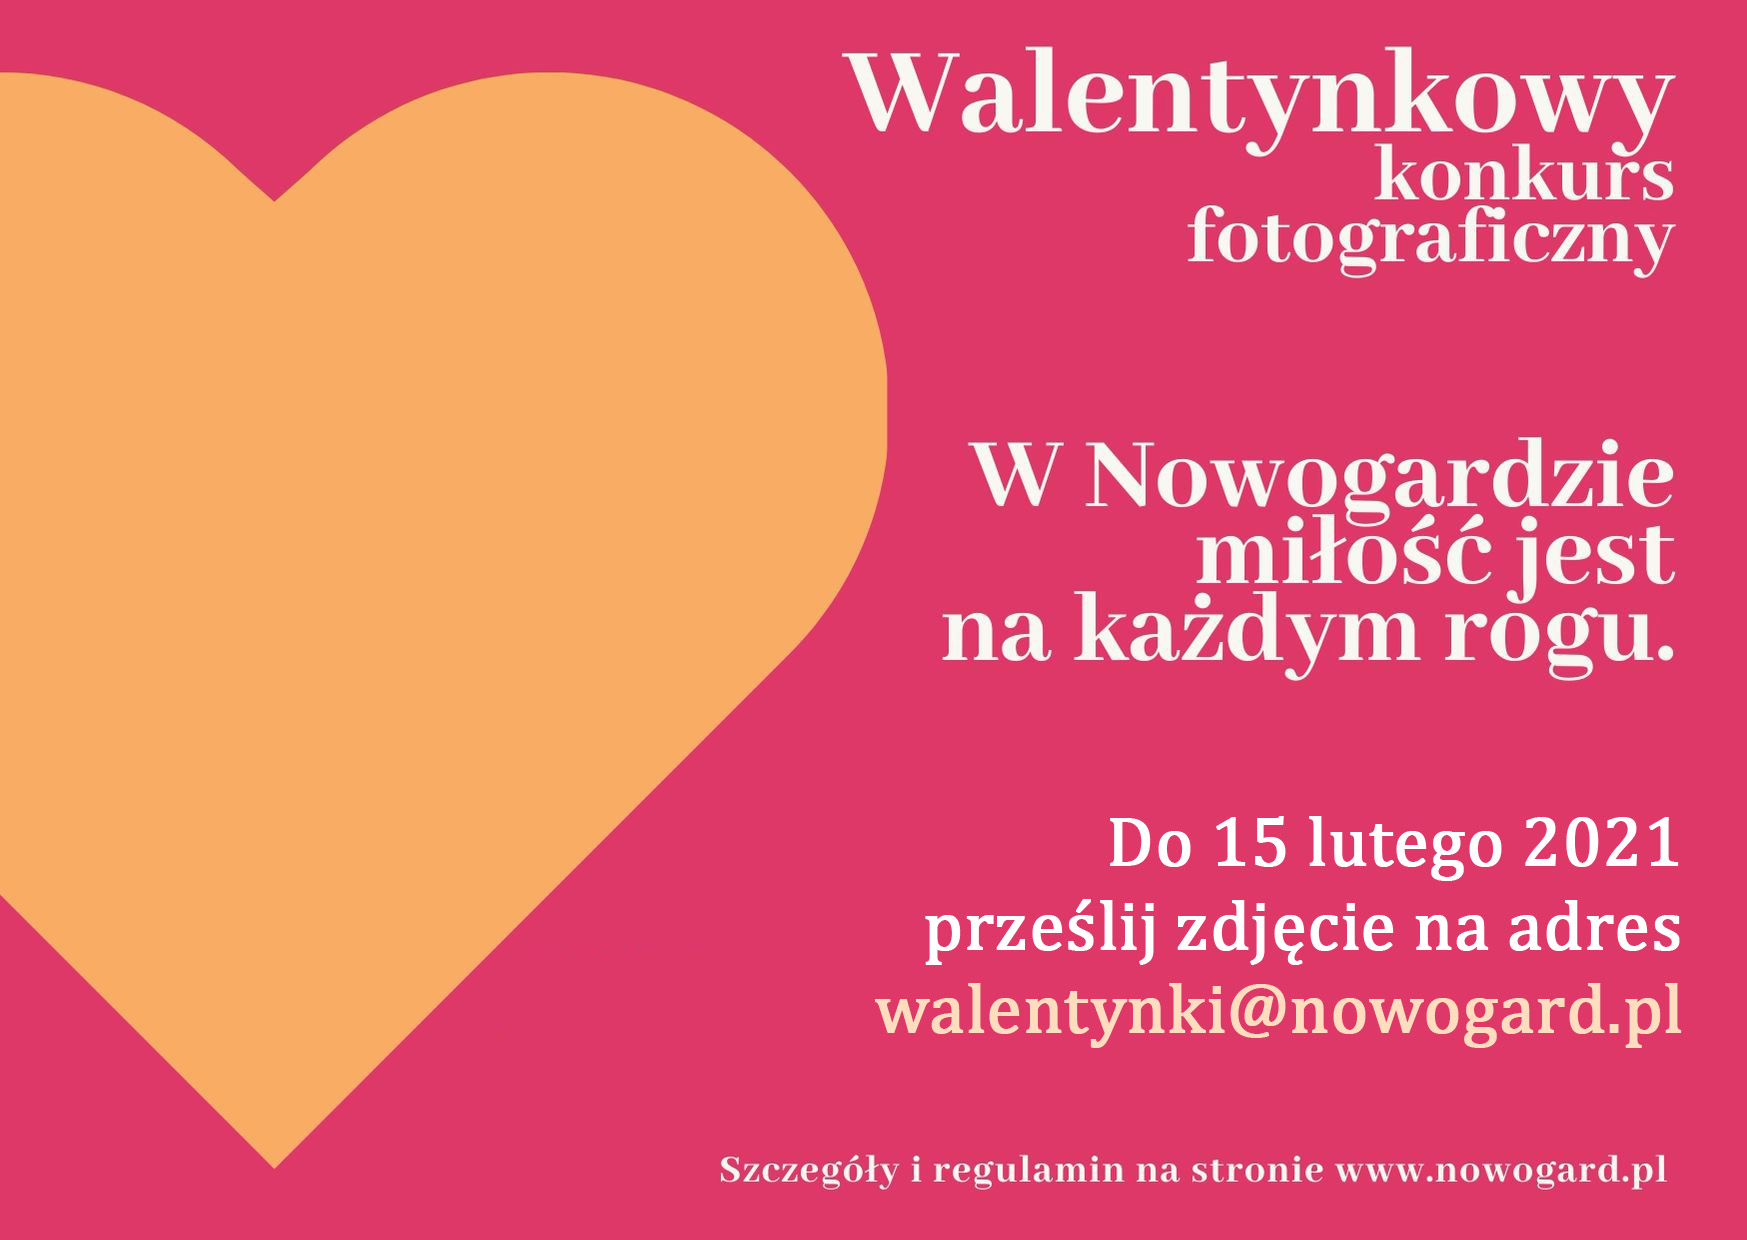 Walentynkowy konkurs fotograficzny